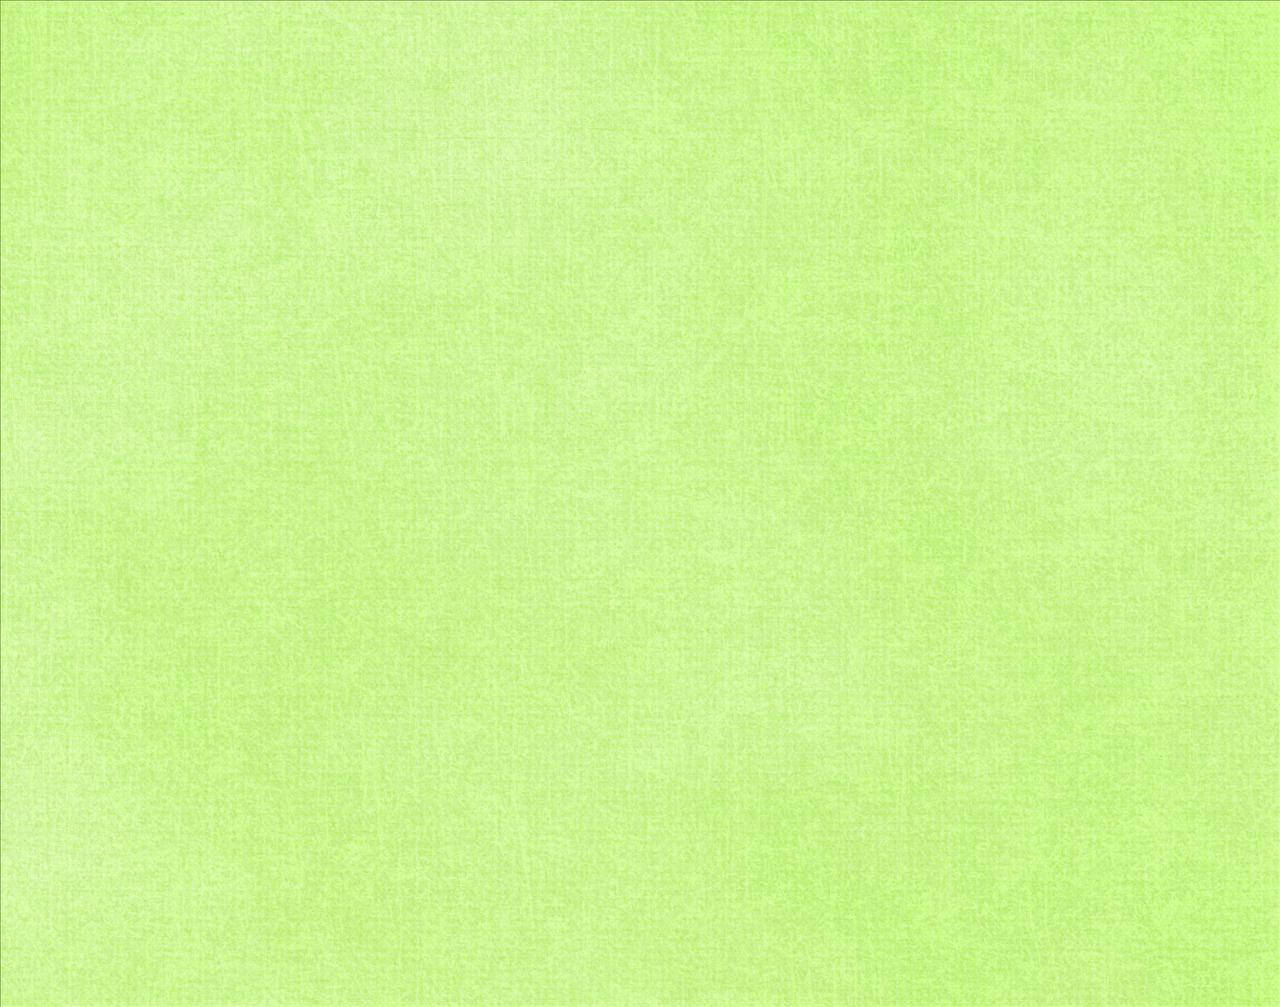 Light Green Fabric Texture Wallpaper